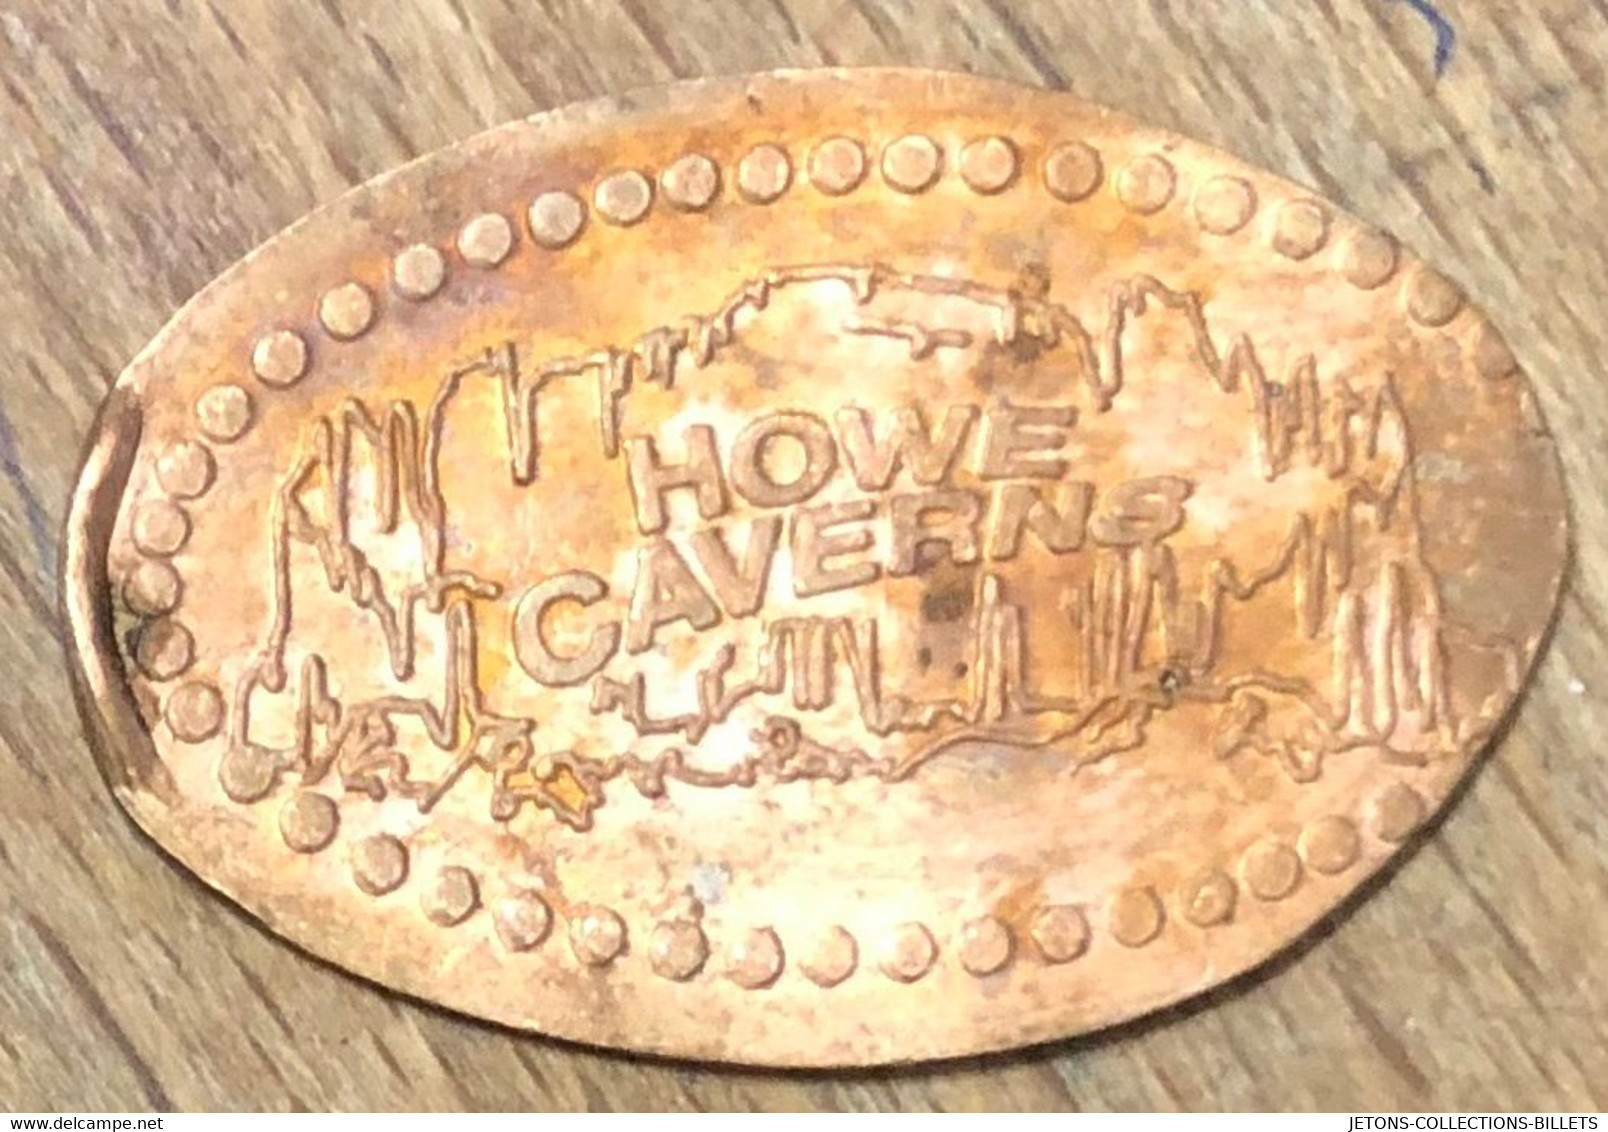 ÉTATS-UNIS USA HOWE CAVERNS PIÈCE ÉCRASÉE PENNY ELONGATED COIN MEDAILLE TOURISTIQUE MEDALS TOKENS - Pièces écrasées (Elongated Coins)